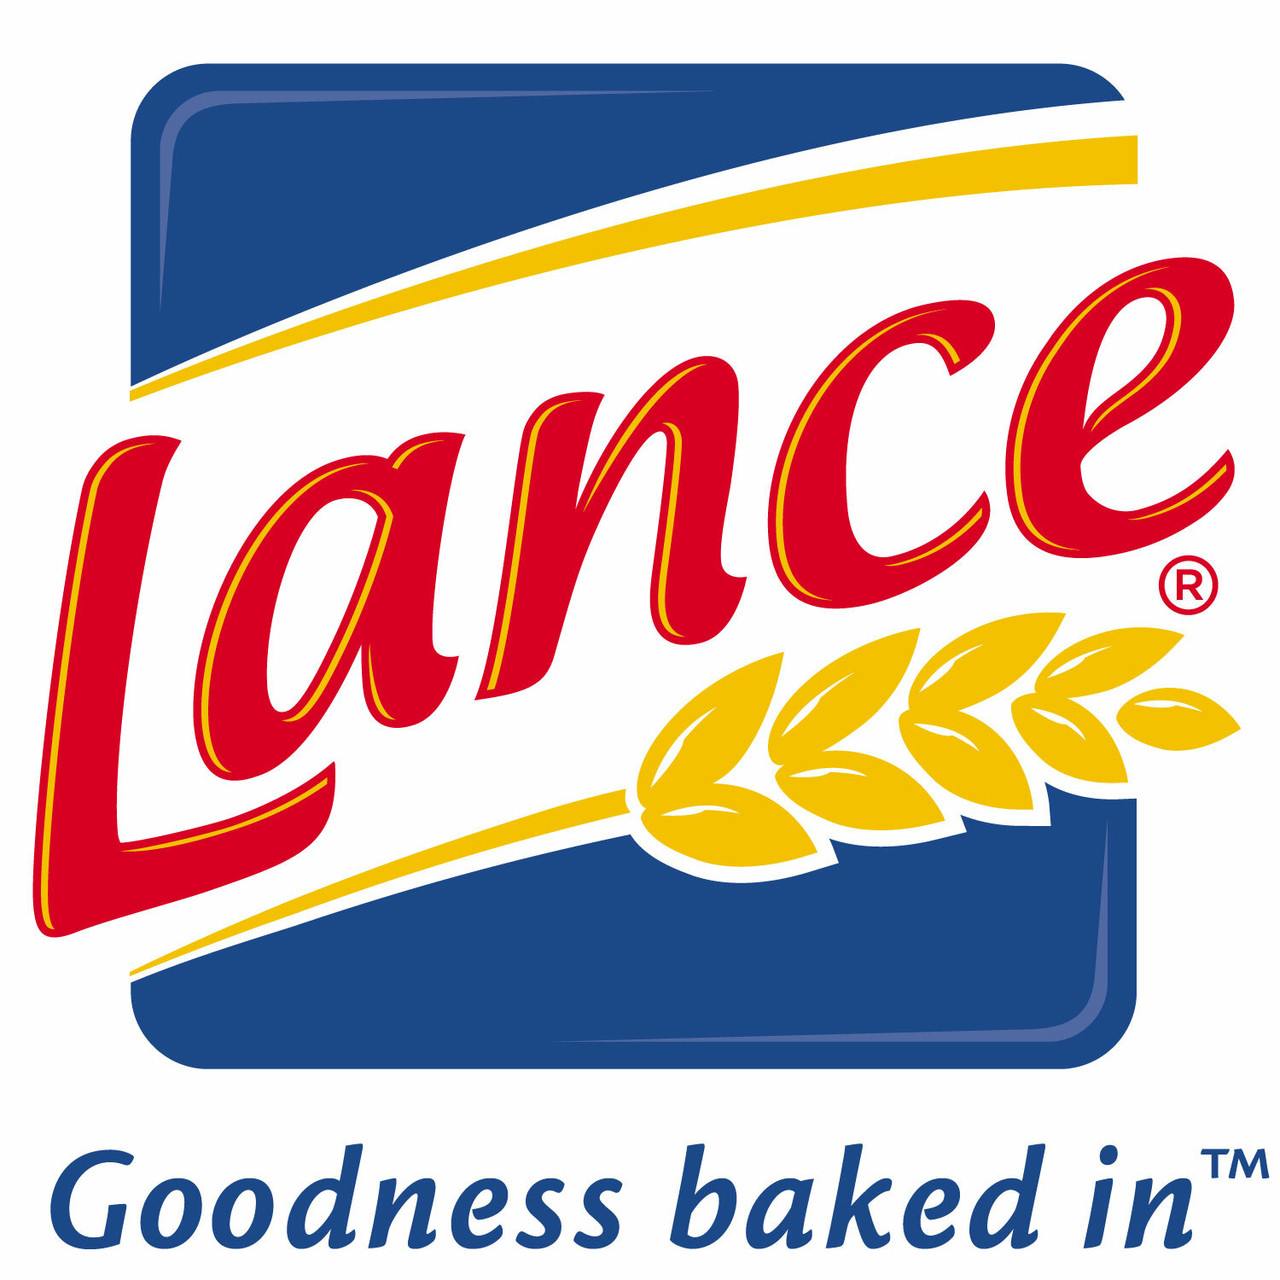 Lance®